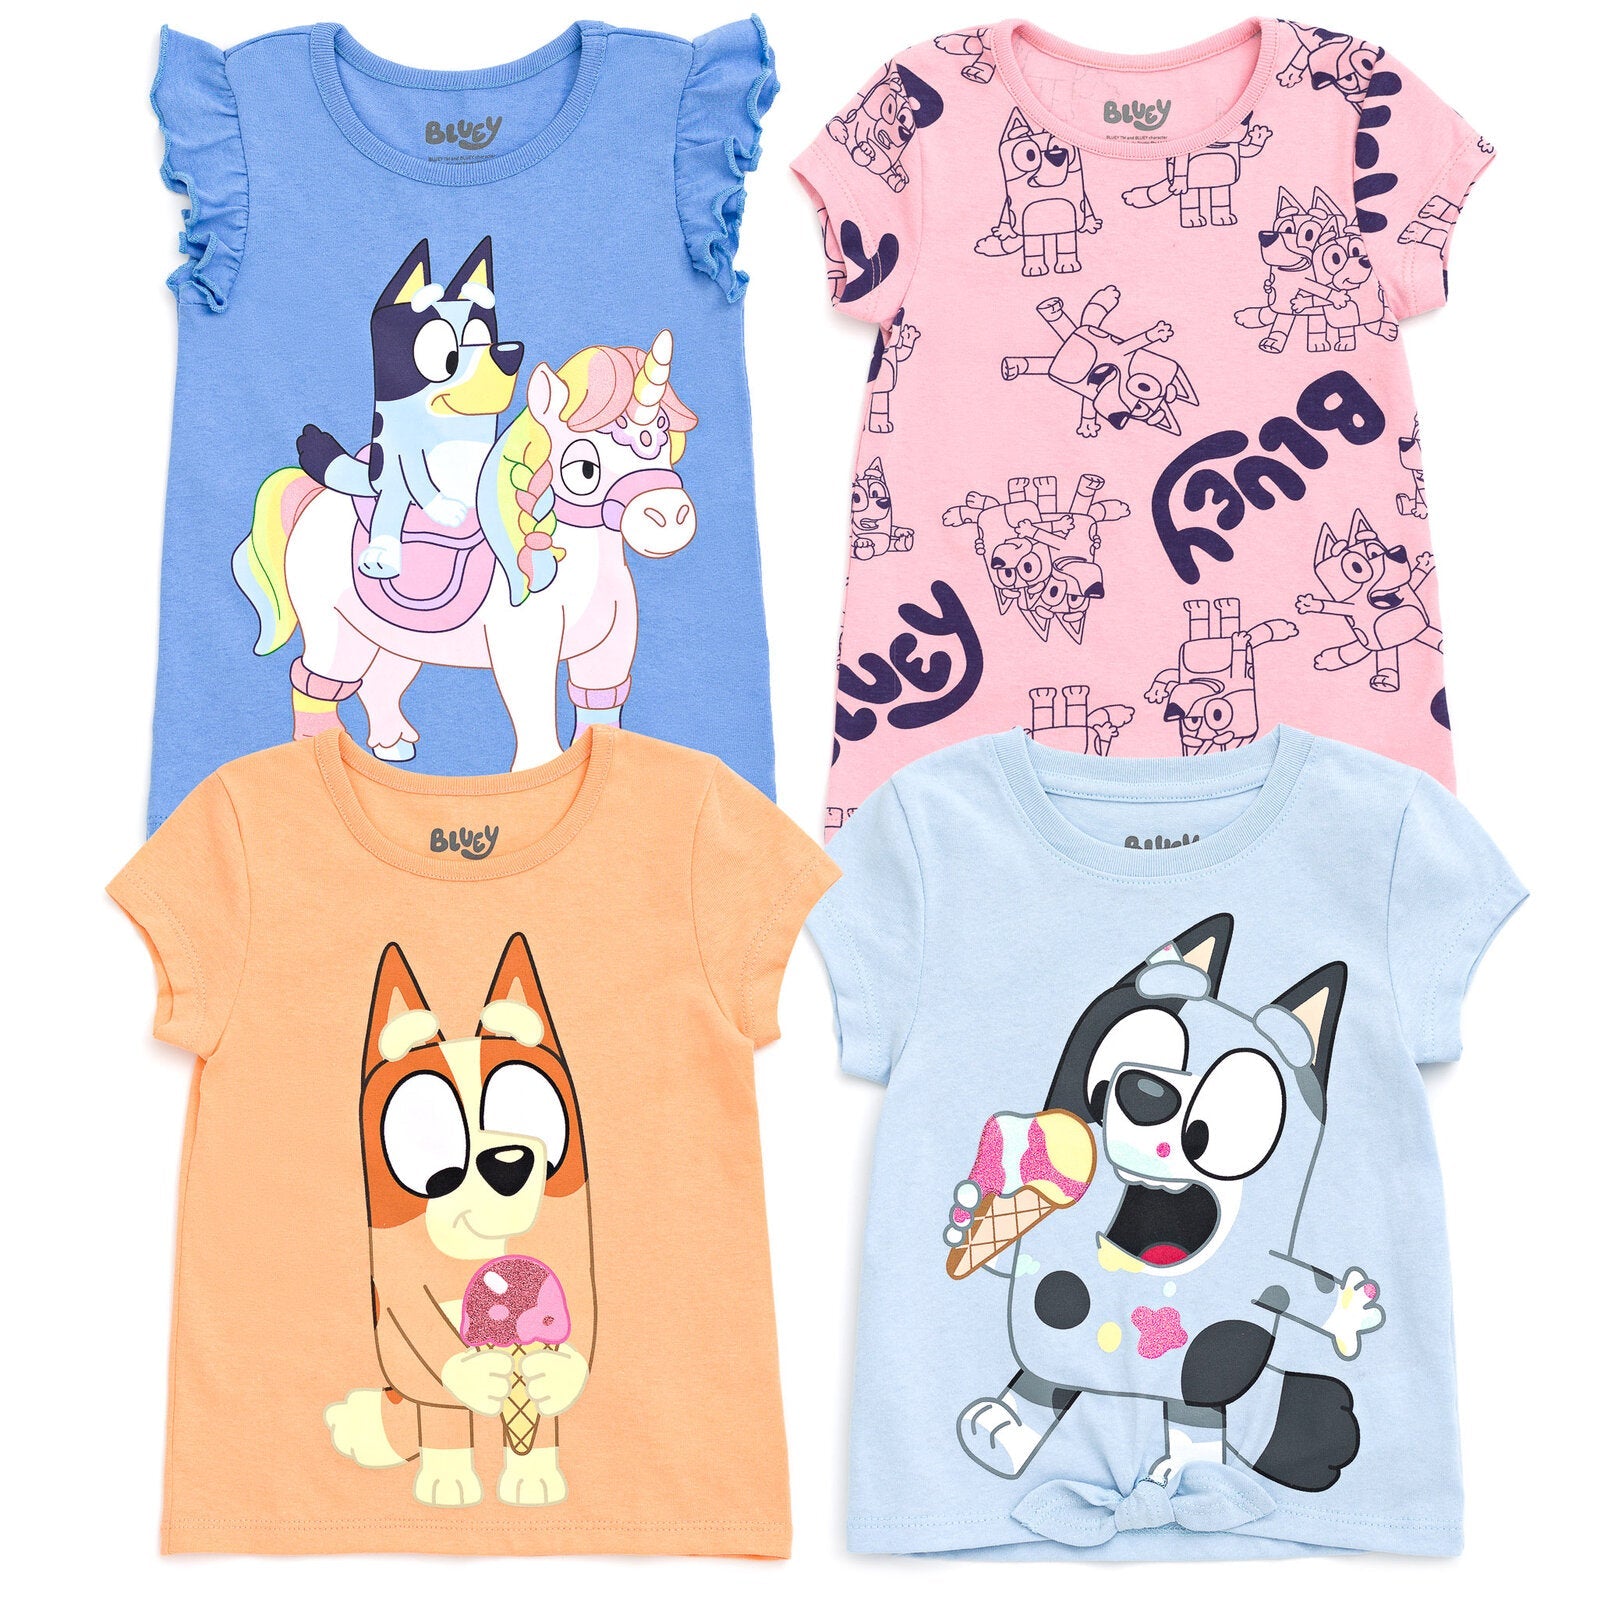 Set Playeras Niña Disney Princesas 4 Pack Original Camiseta